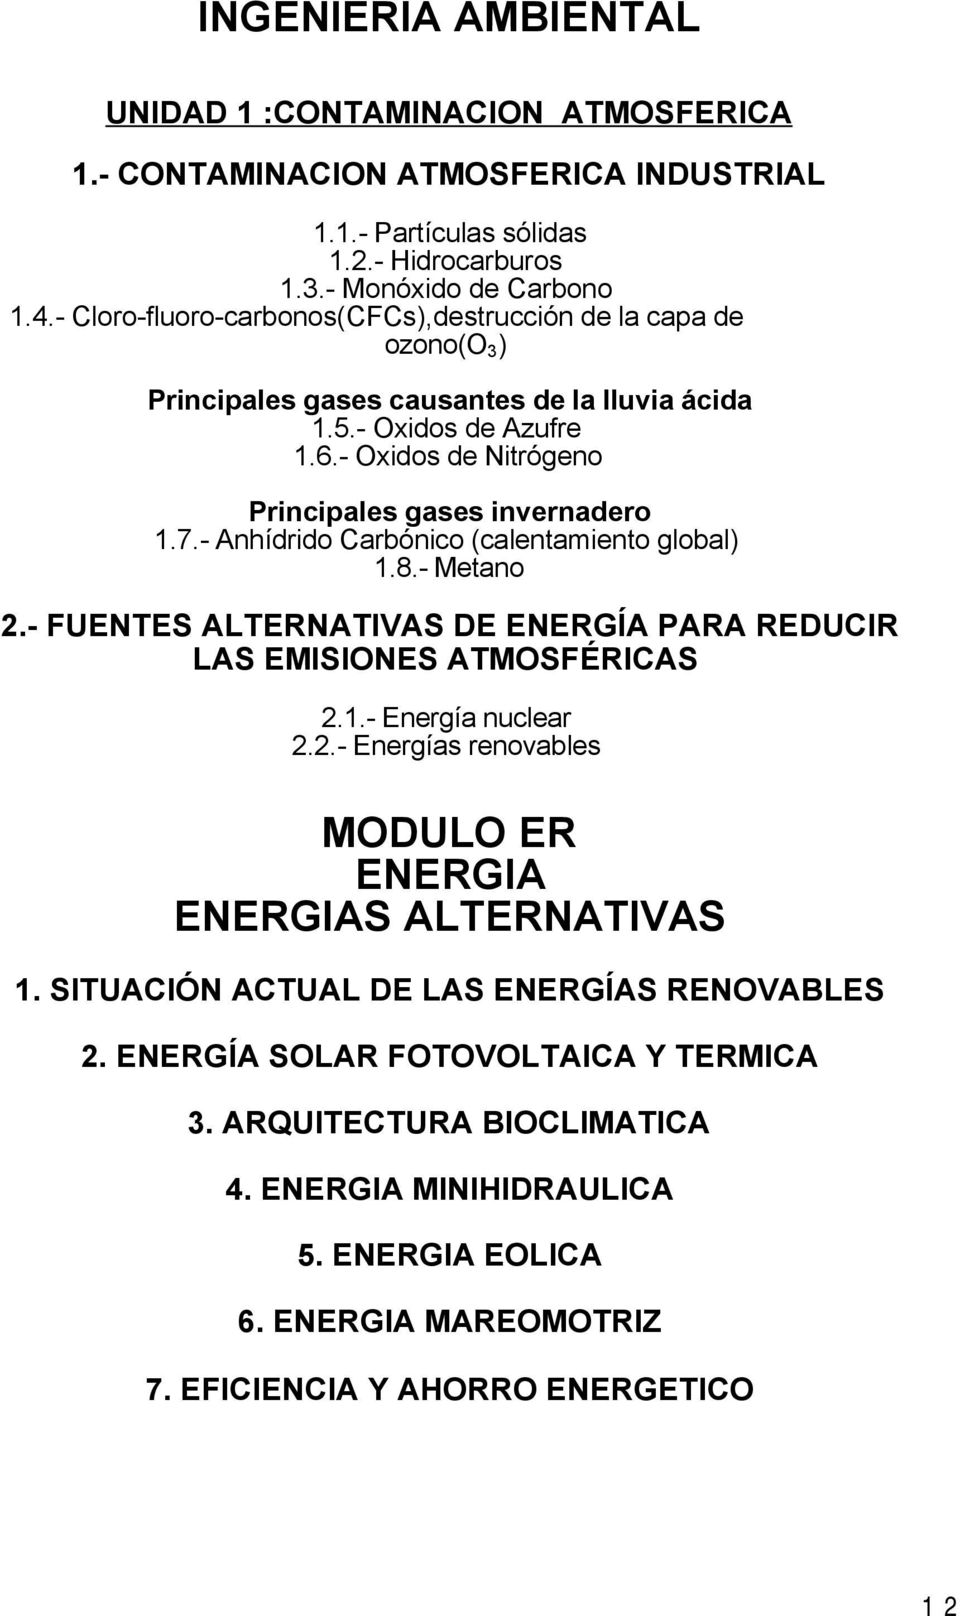 - Anhídrido Carbónico (calentamiento global) 1.8.- Metano 2.- FUENTES ALTERNATIVAS DE ENERGÍA PARA REDUCIR LAS EMISIONES ATMOSFÉRICAS 2.1.- Energía nuclear 2.2.- Energías renovables MODULO ER ENERGIA ENERGIAS ALTERNATIVAS 1.